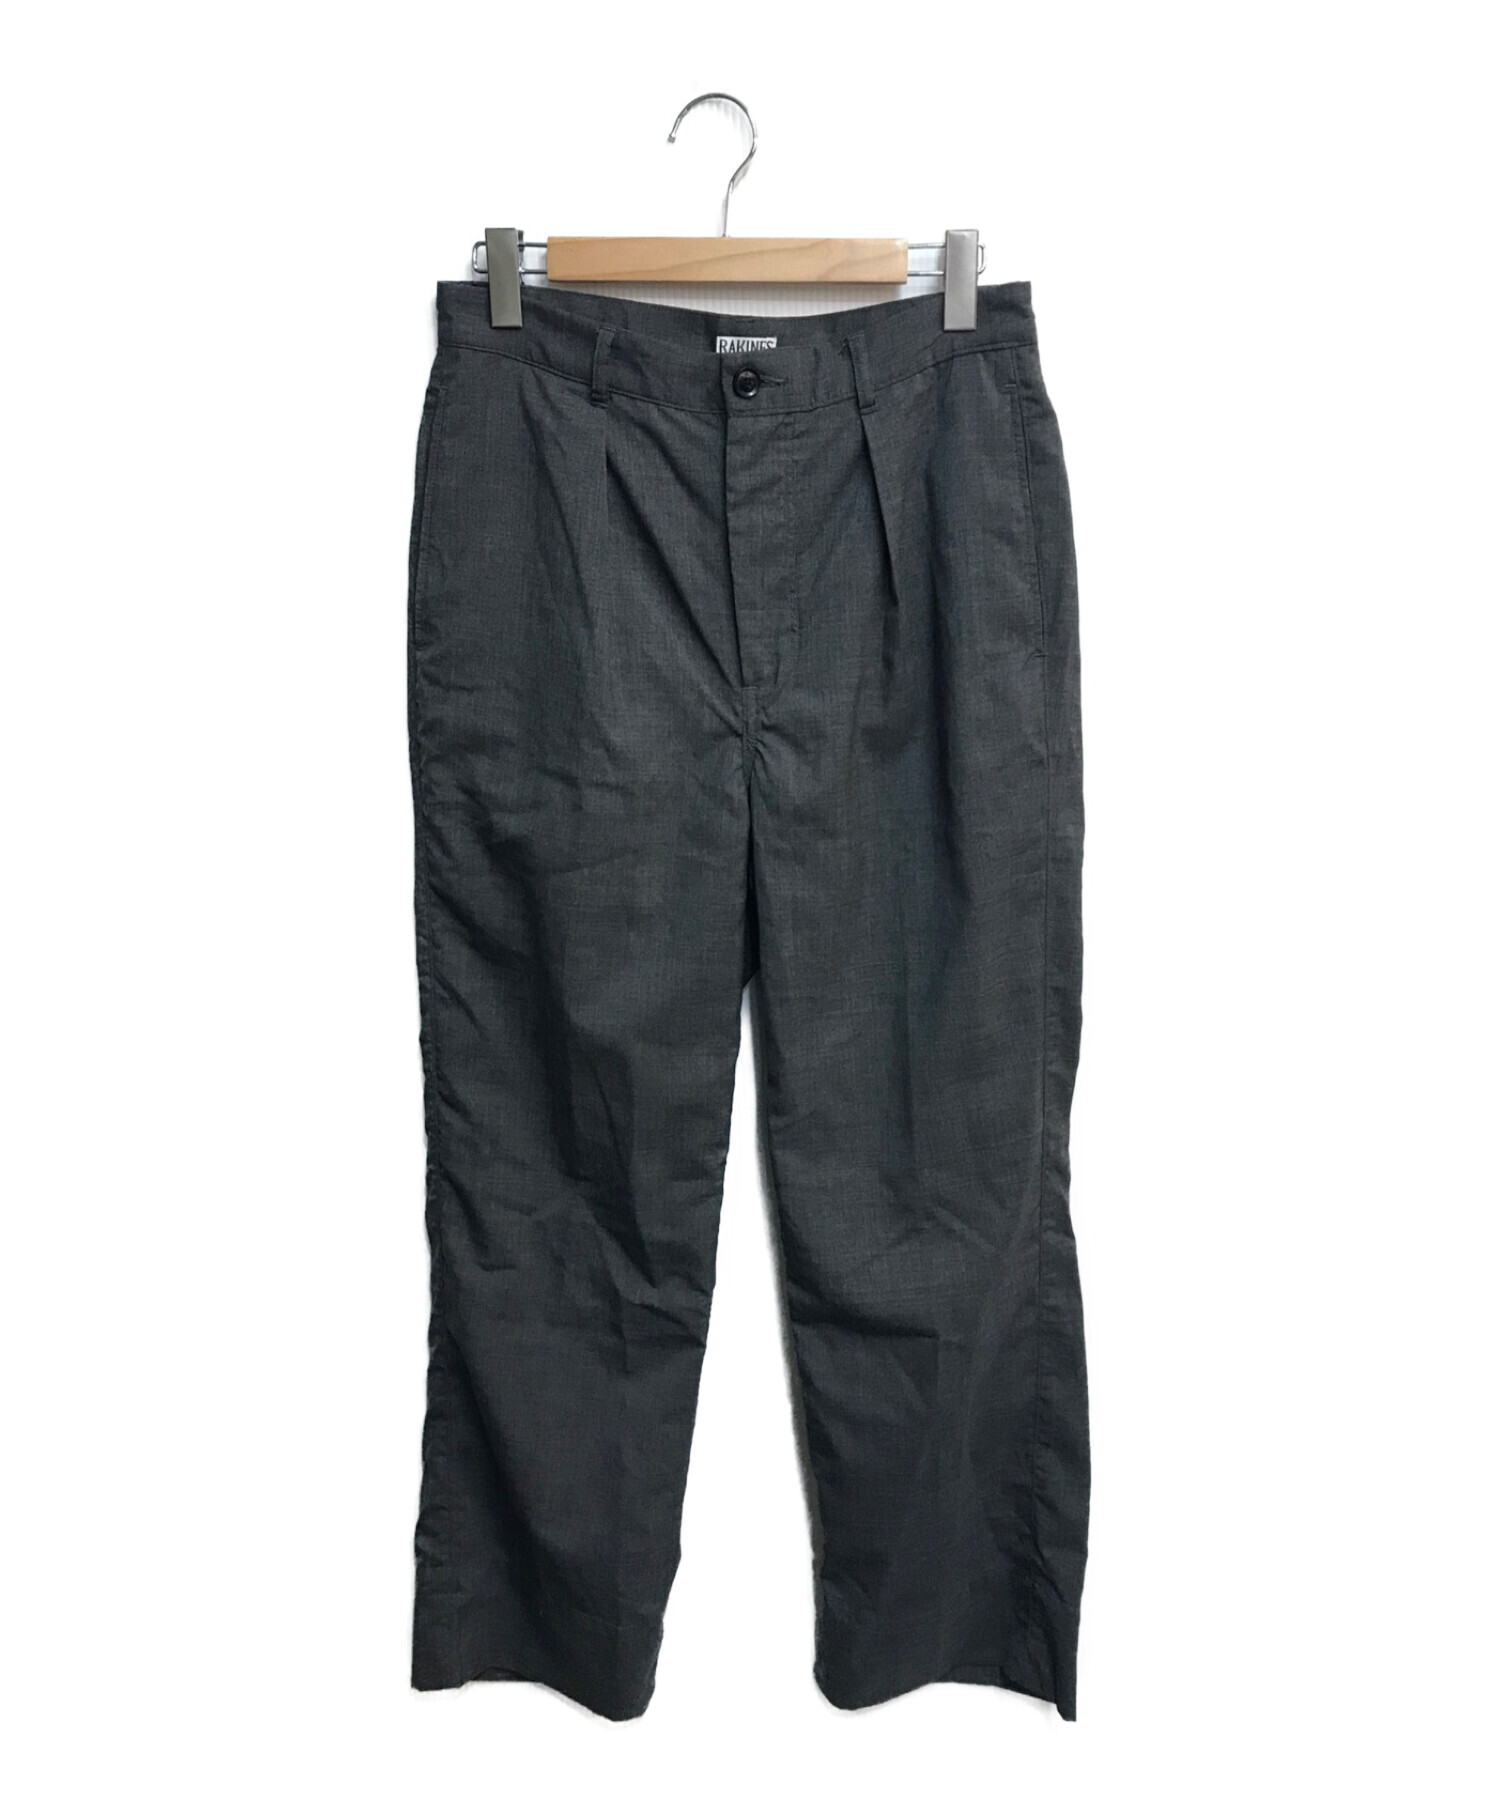 RAKINES (ラキネス) Tropical cloth 1tuck pants/トロピカルクロスワンタックパンツ グレー サイズ:2